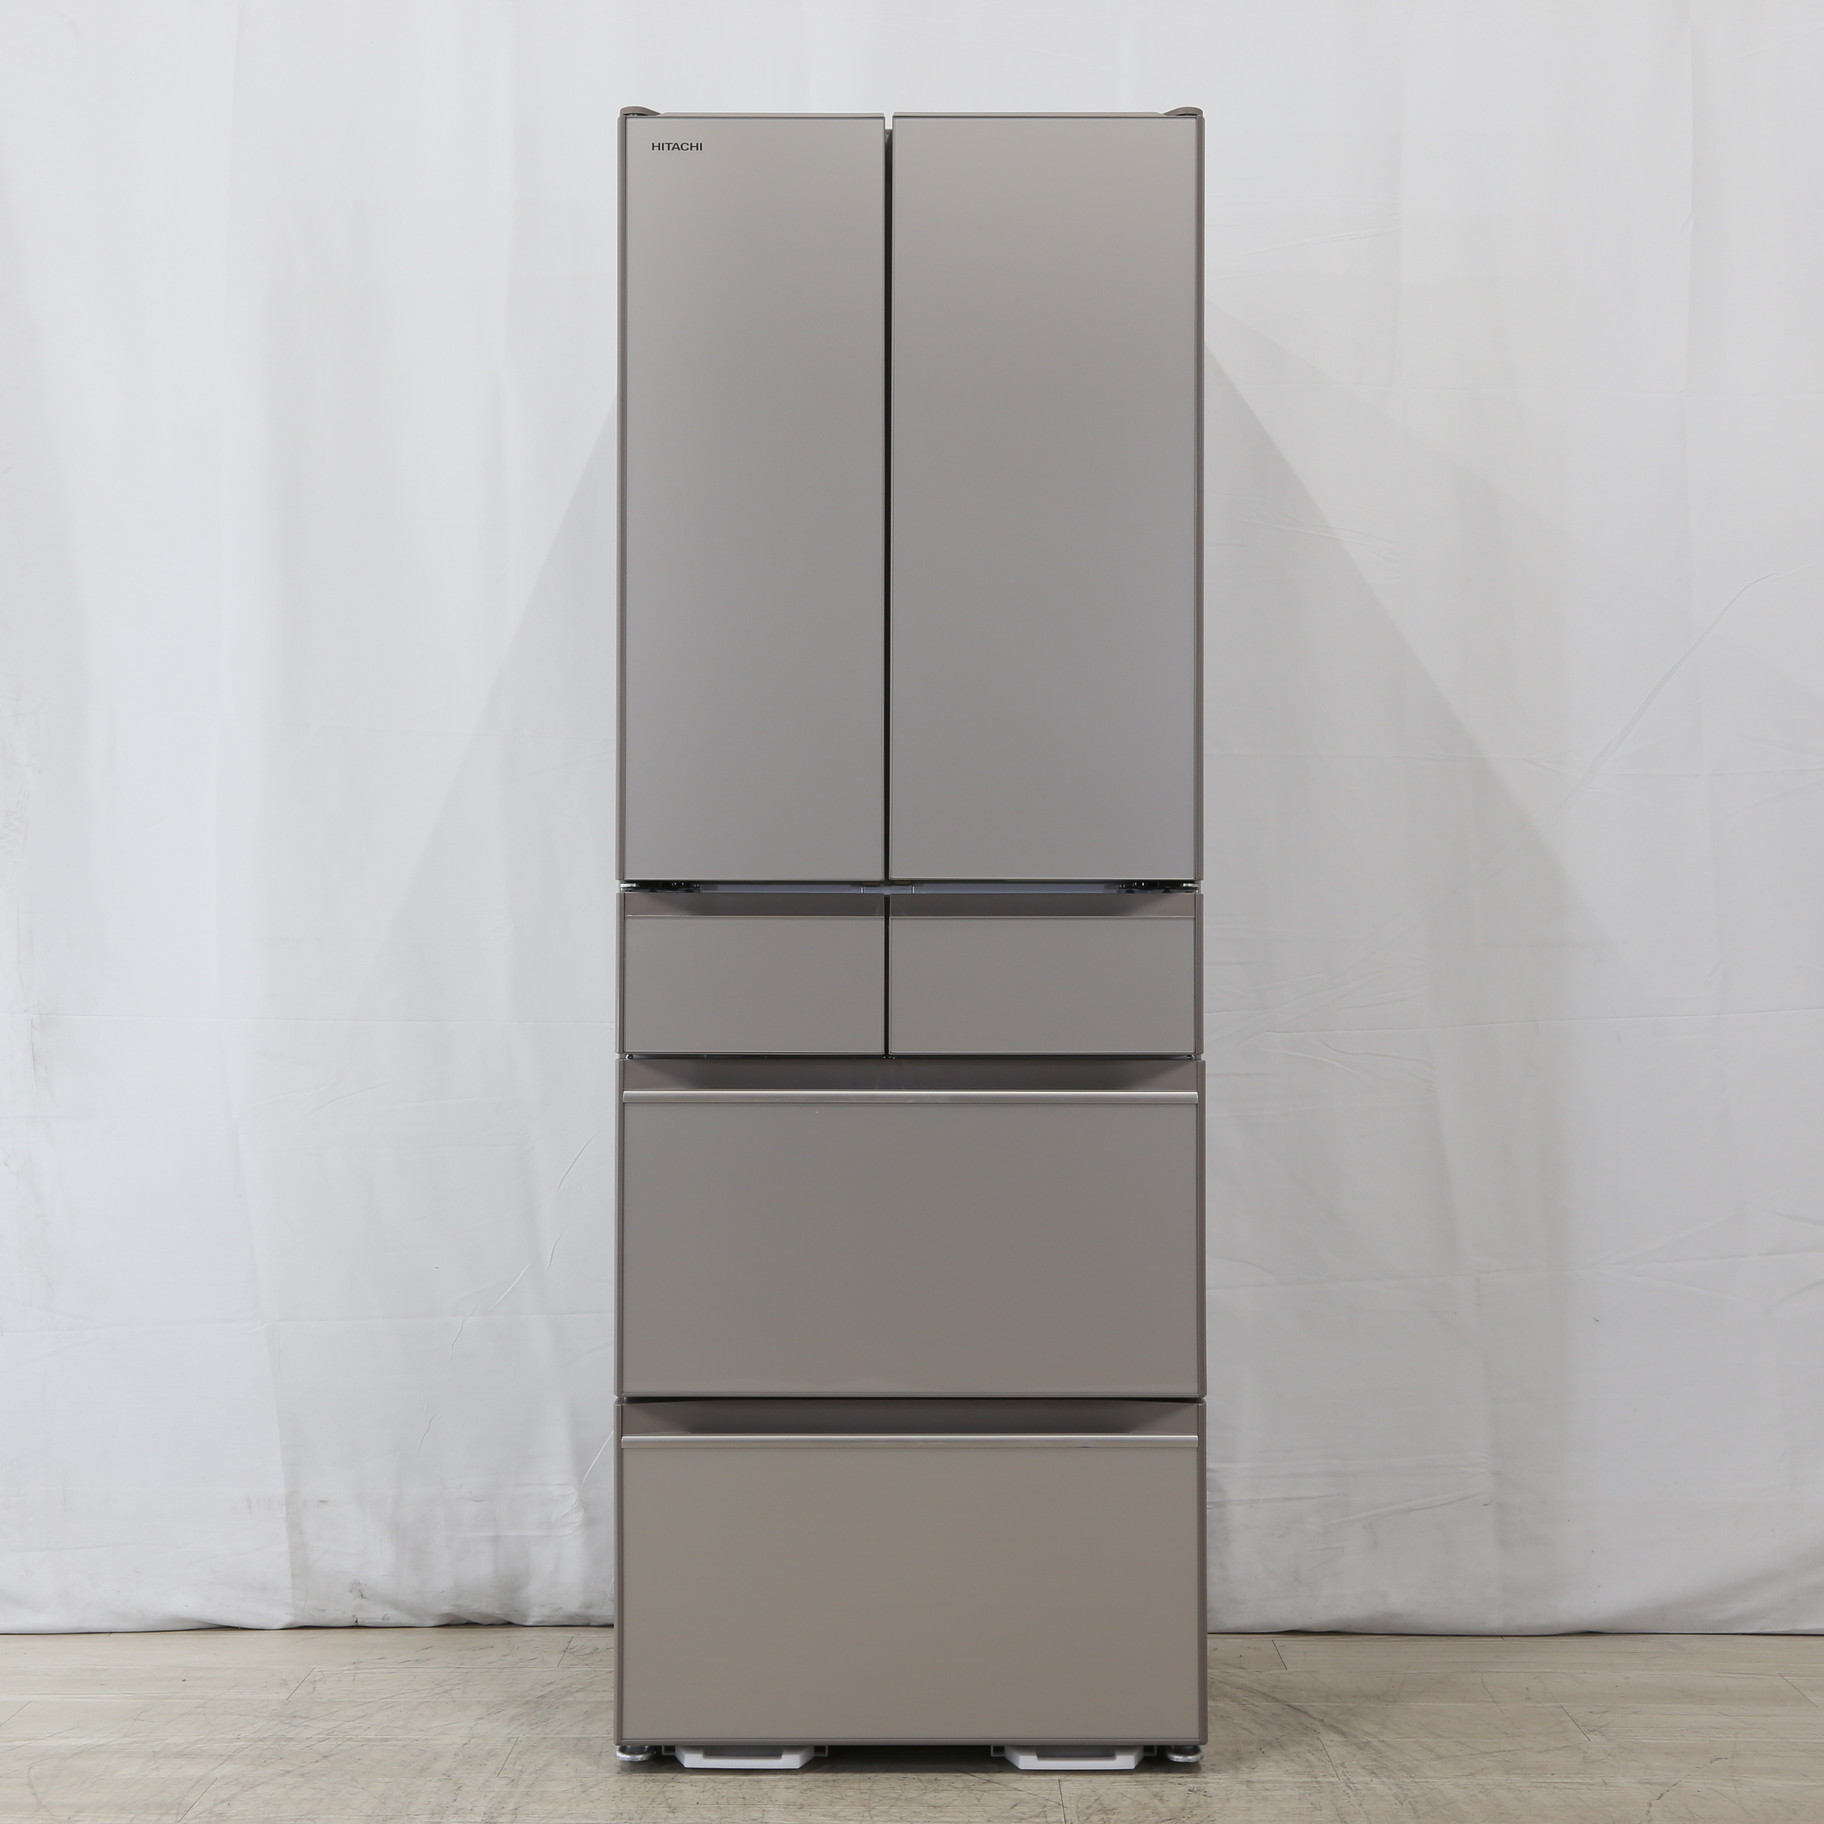 色移り有り 日立ノンフロン冷凍冷蔵庫 大型 R-HW48N(XN) クリスタル